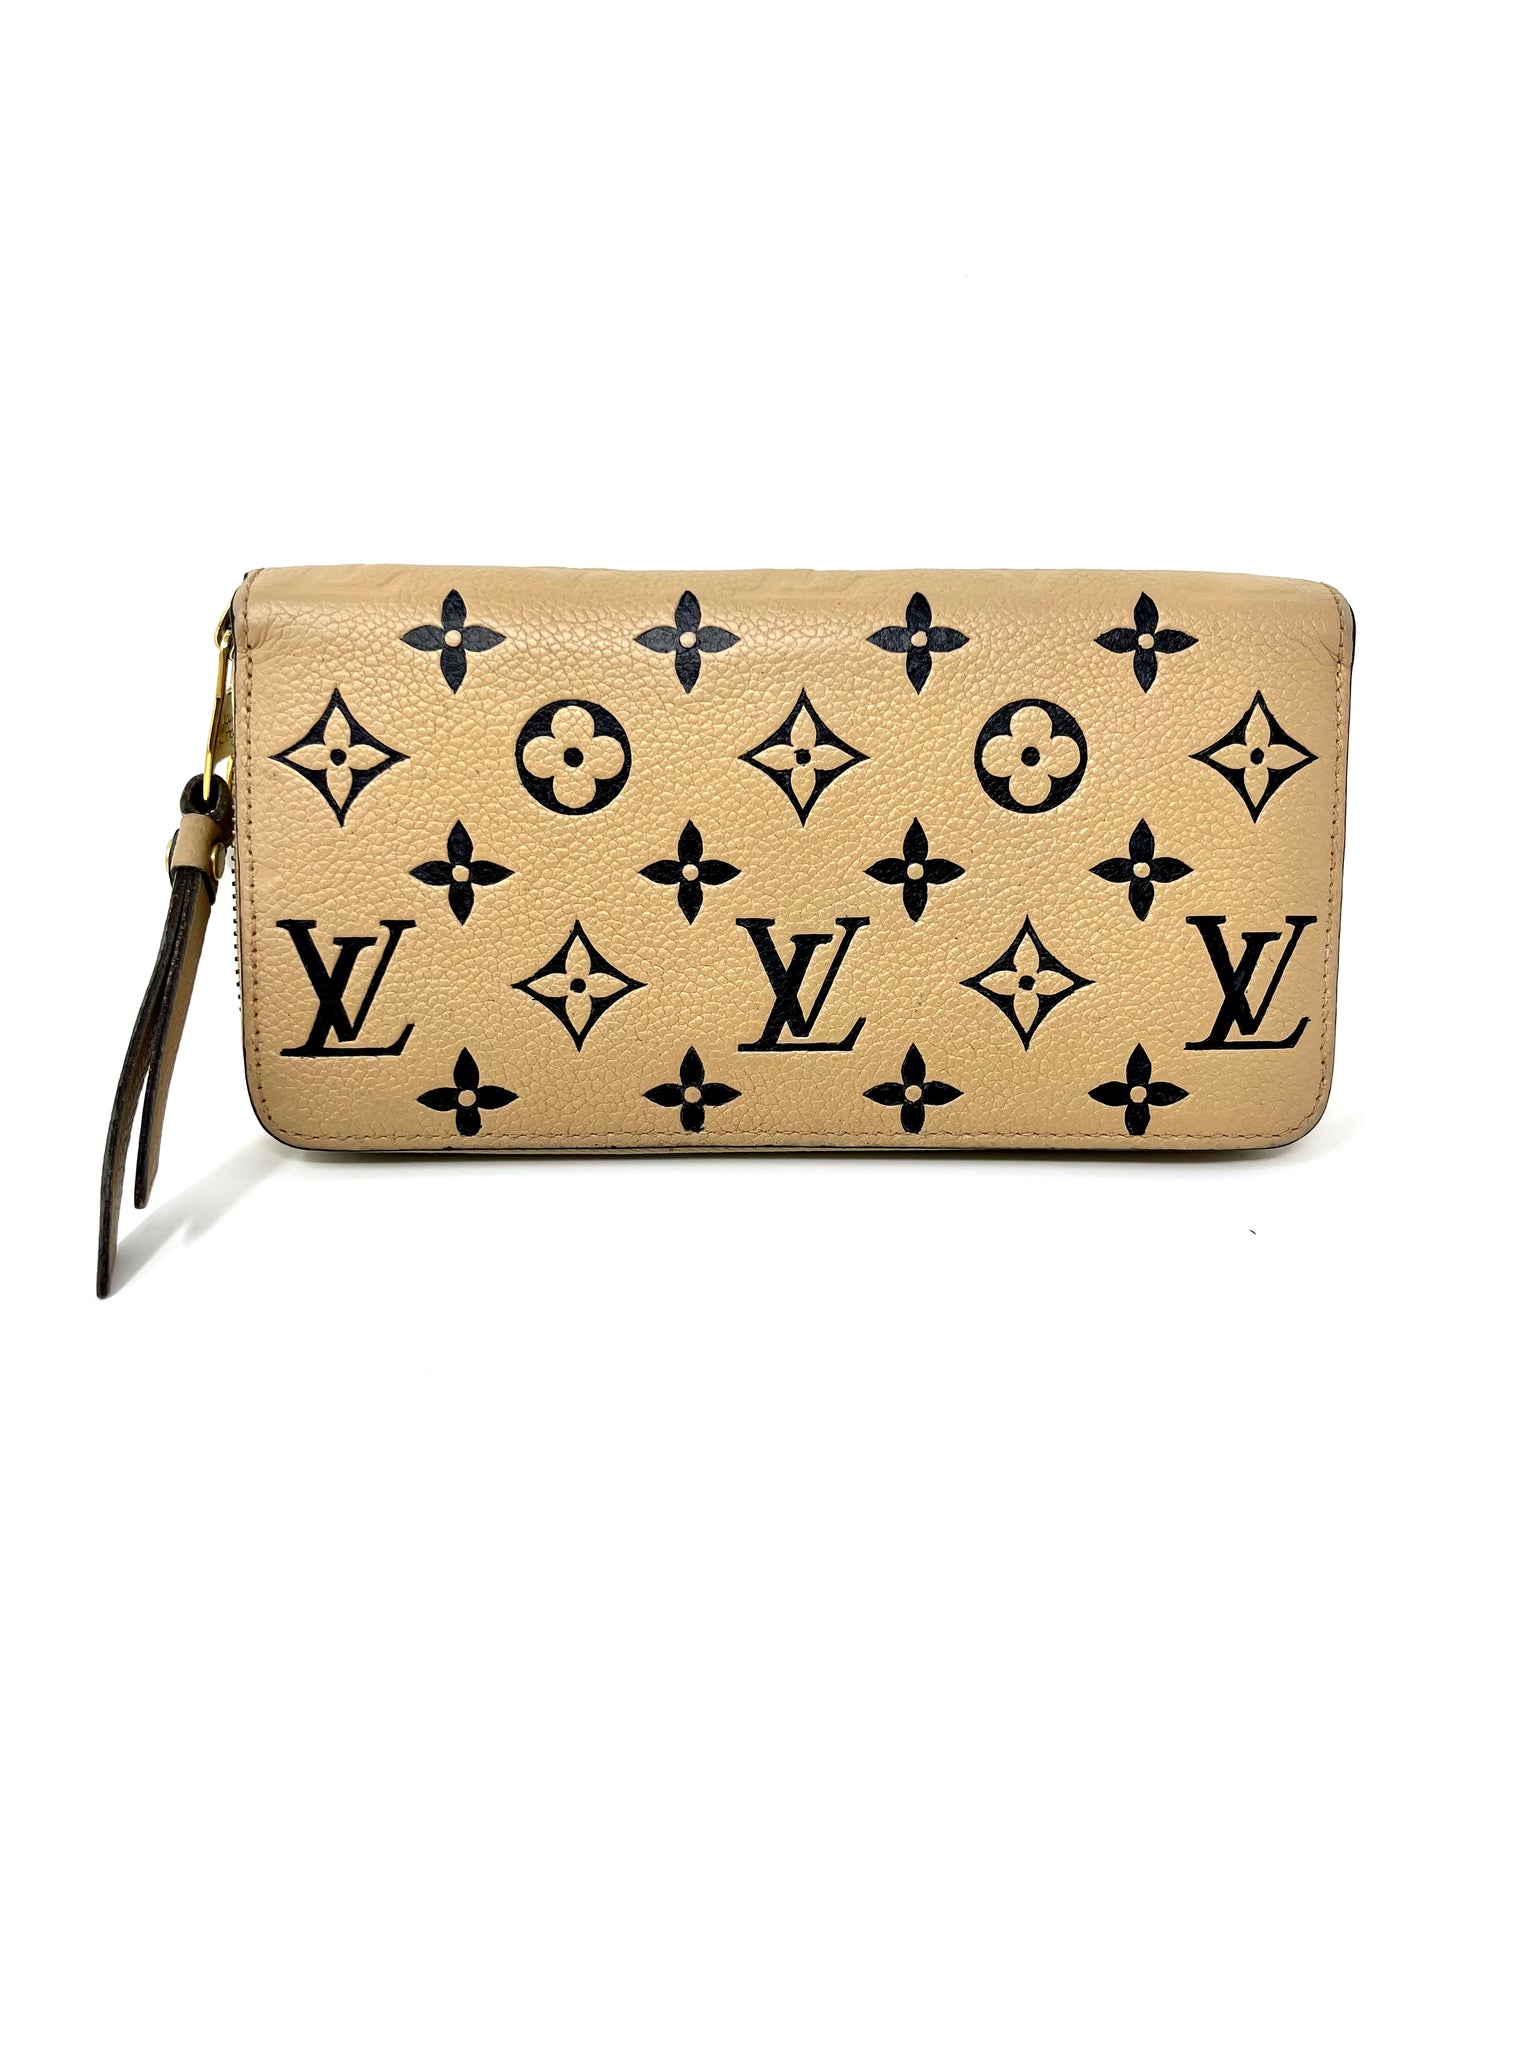 Shopping Bag, Louis Vuitton, Handbag, Louis Vuitton Speedy, Wallet